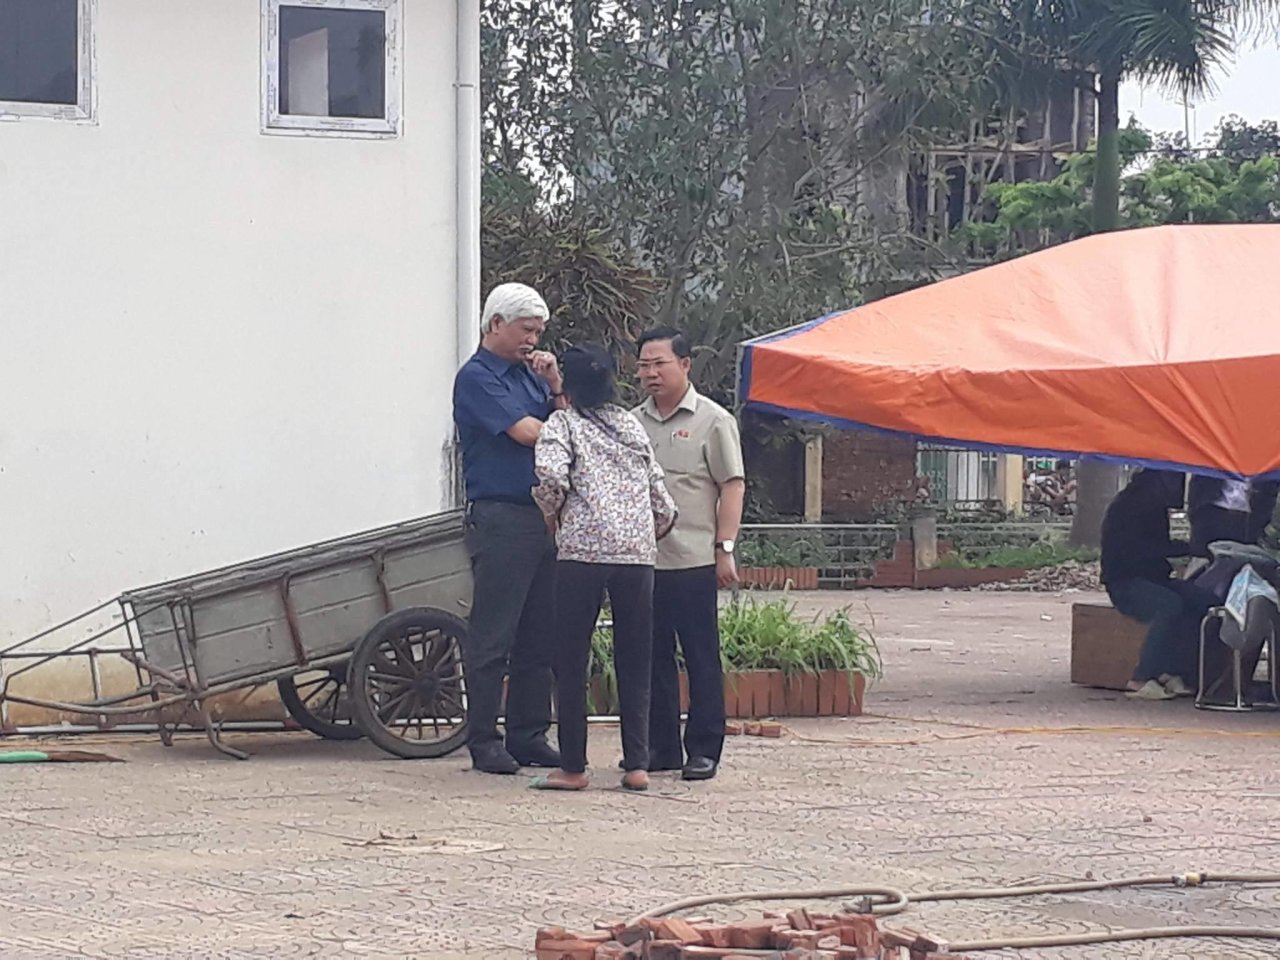 Đại biểu Quốc hội Dương Trung Quốc và Lưu Bình Nhưỡng trò chuyện với người dân trong khi chờ bàn giao người bị giữ- Ảnh: DƯƠNG LIỄU